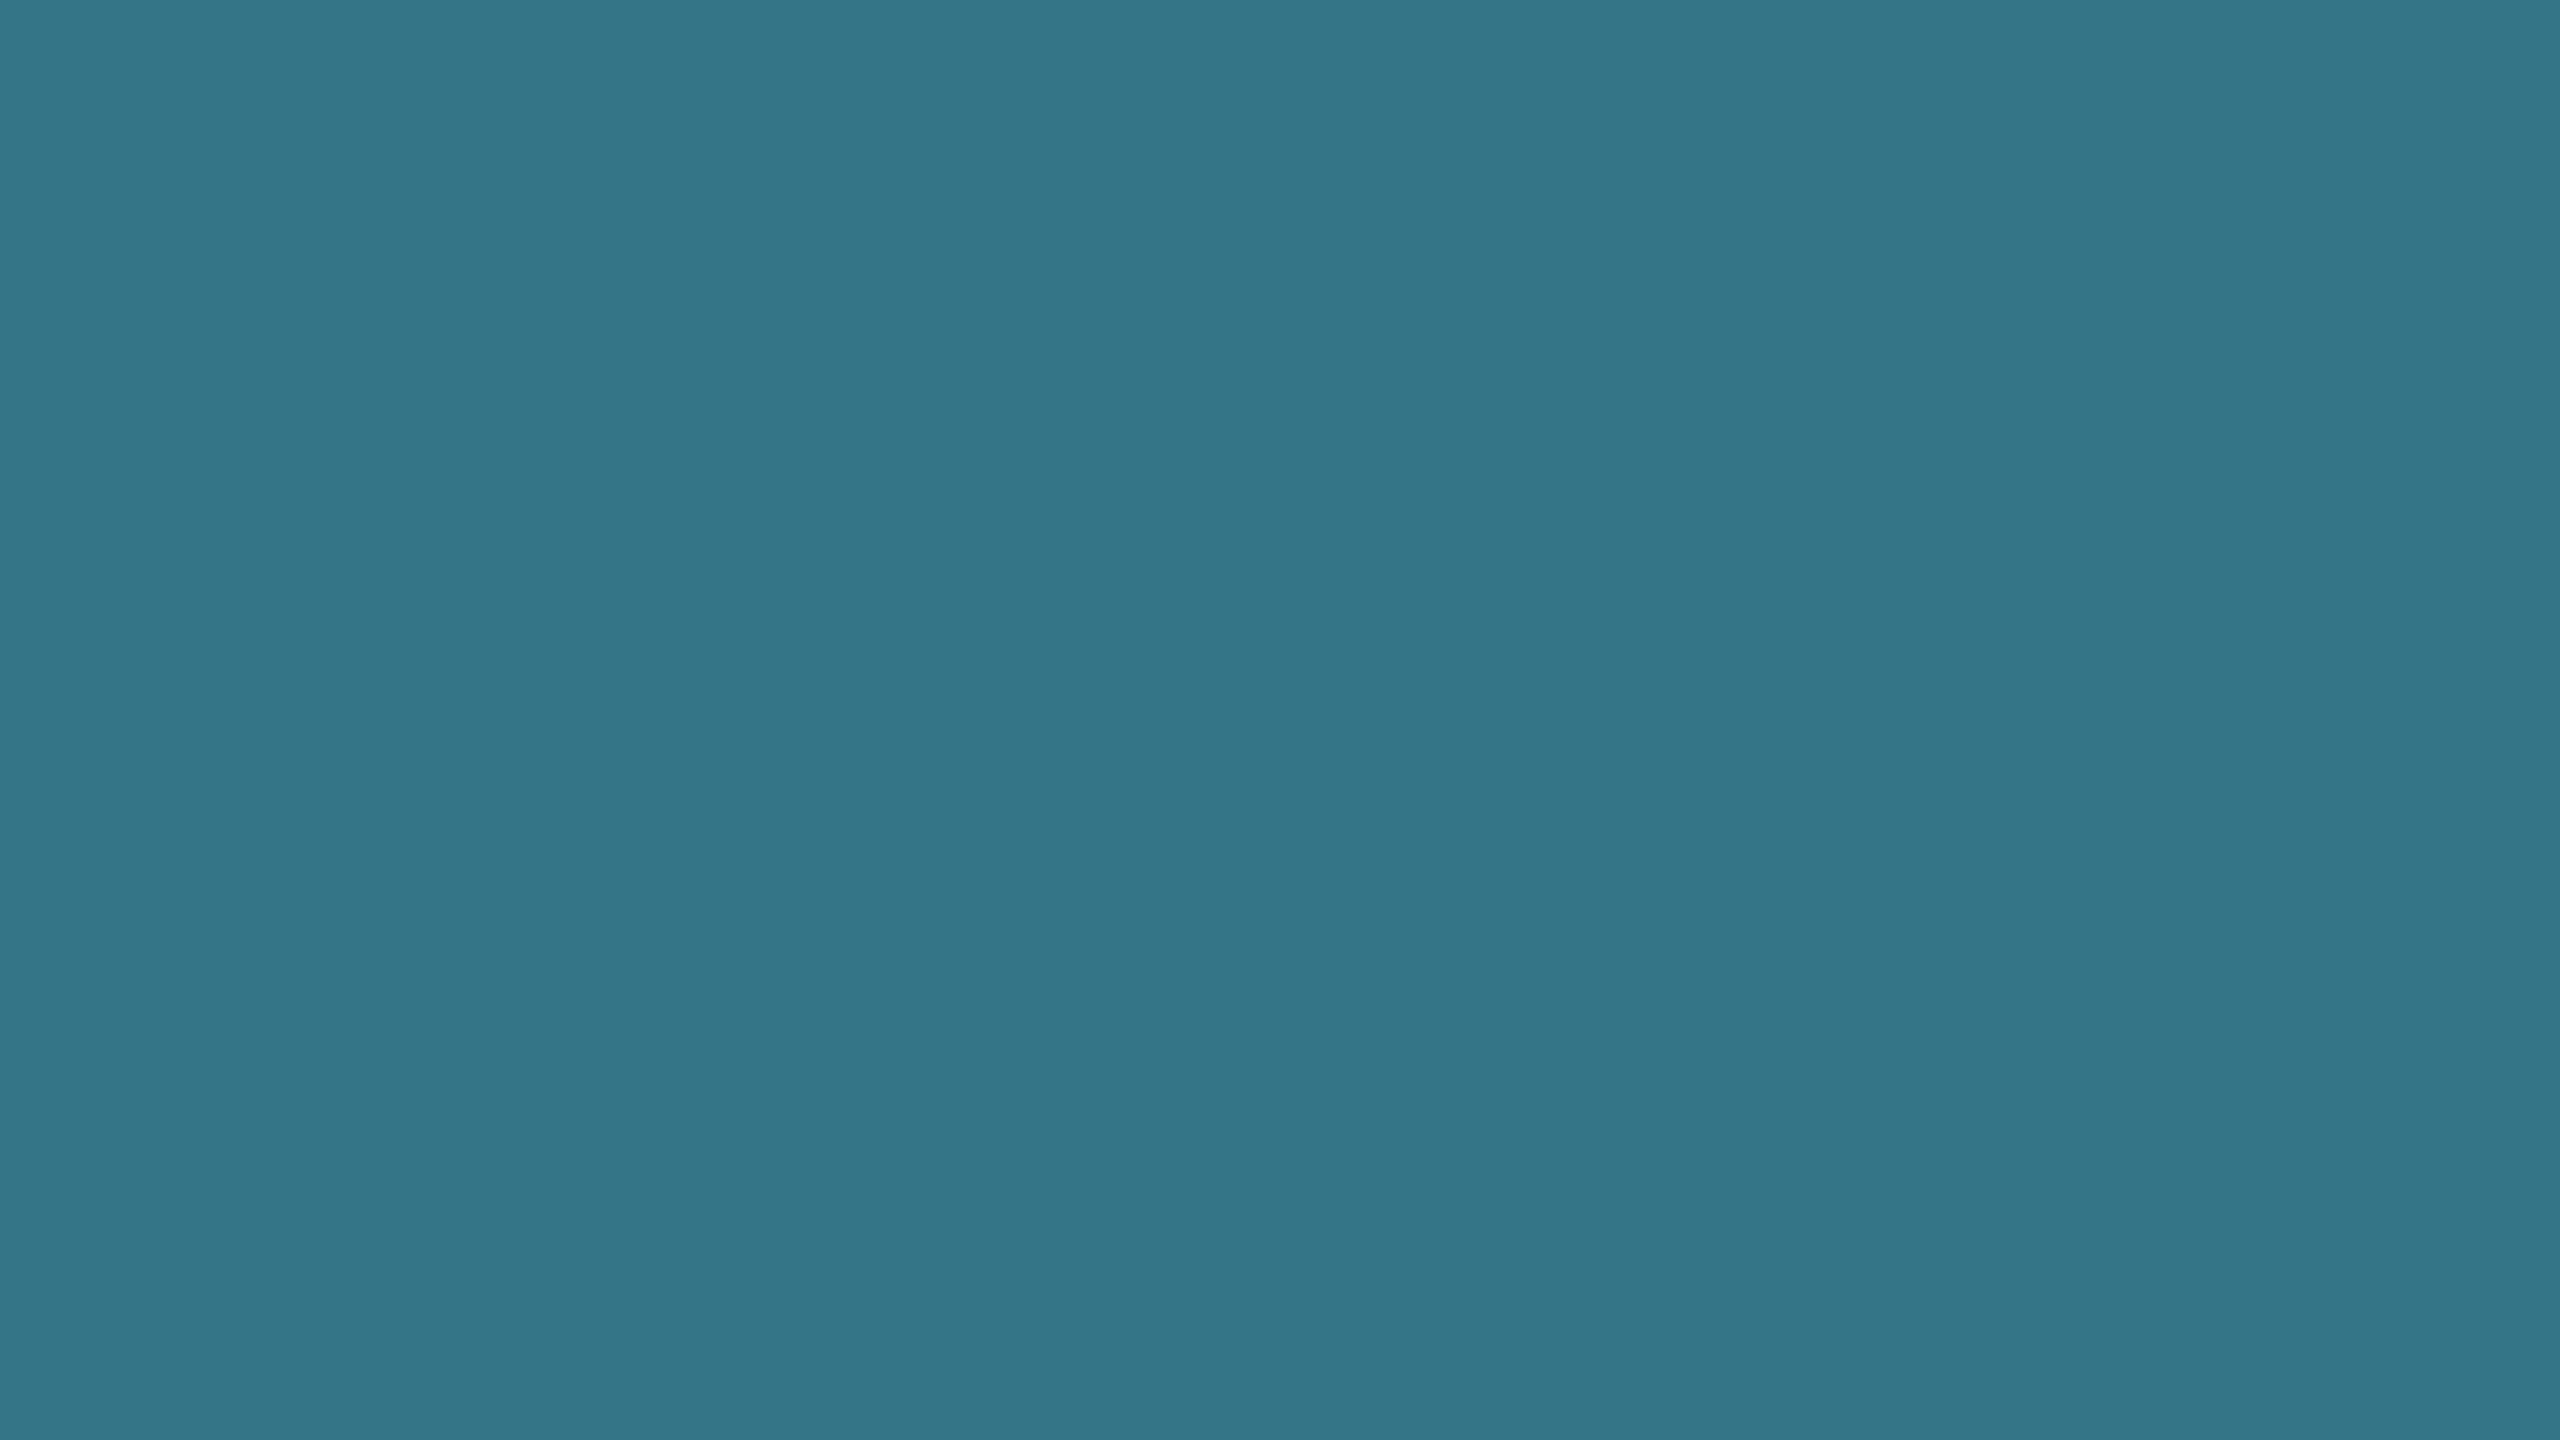 2560×1440 Teal Blue Solid Color Background